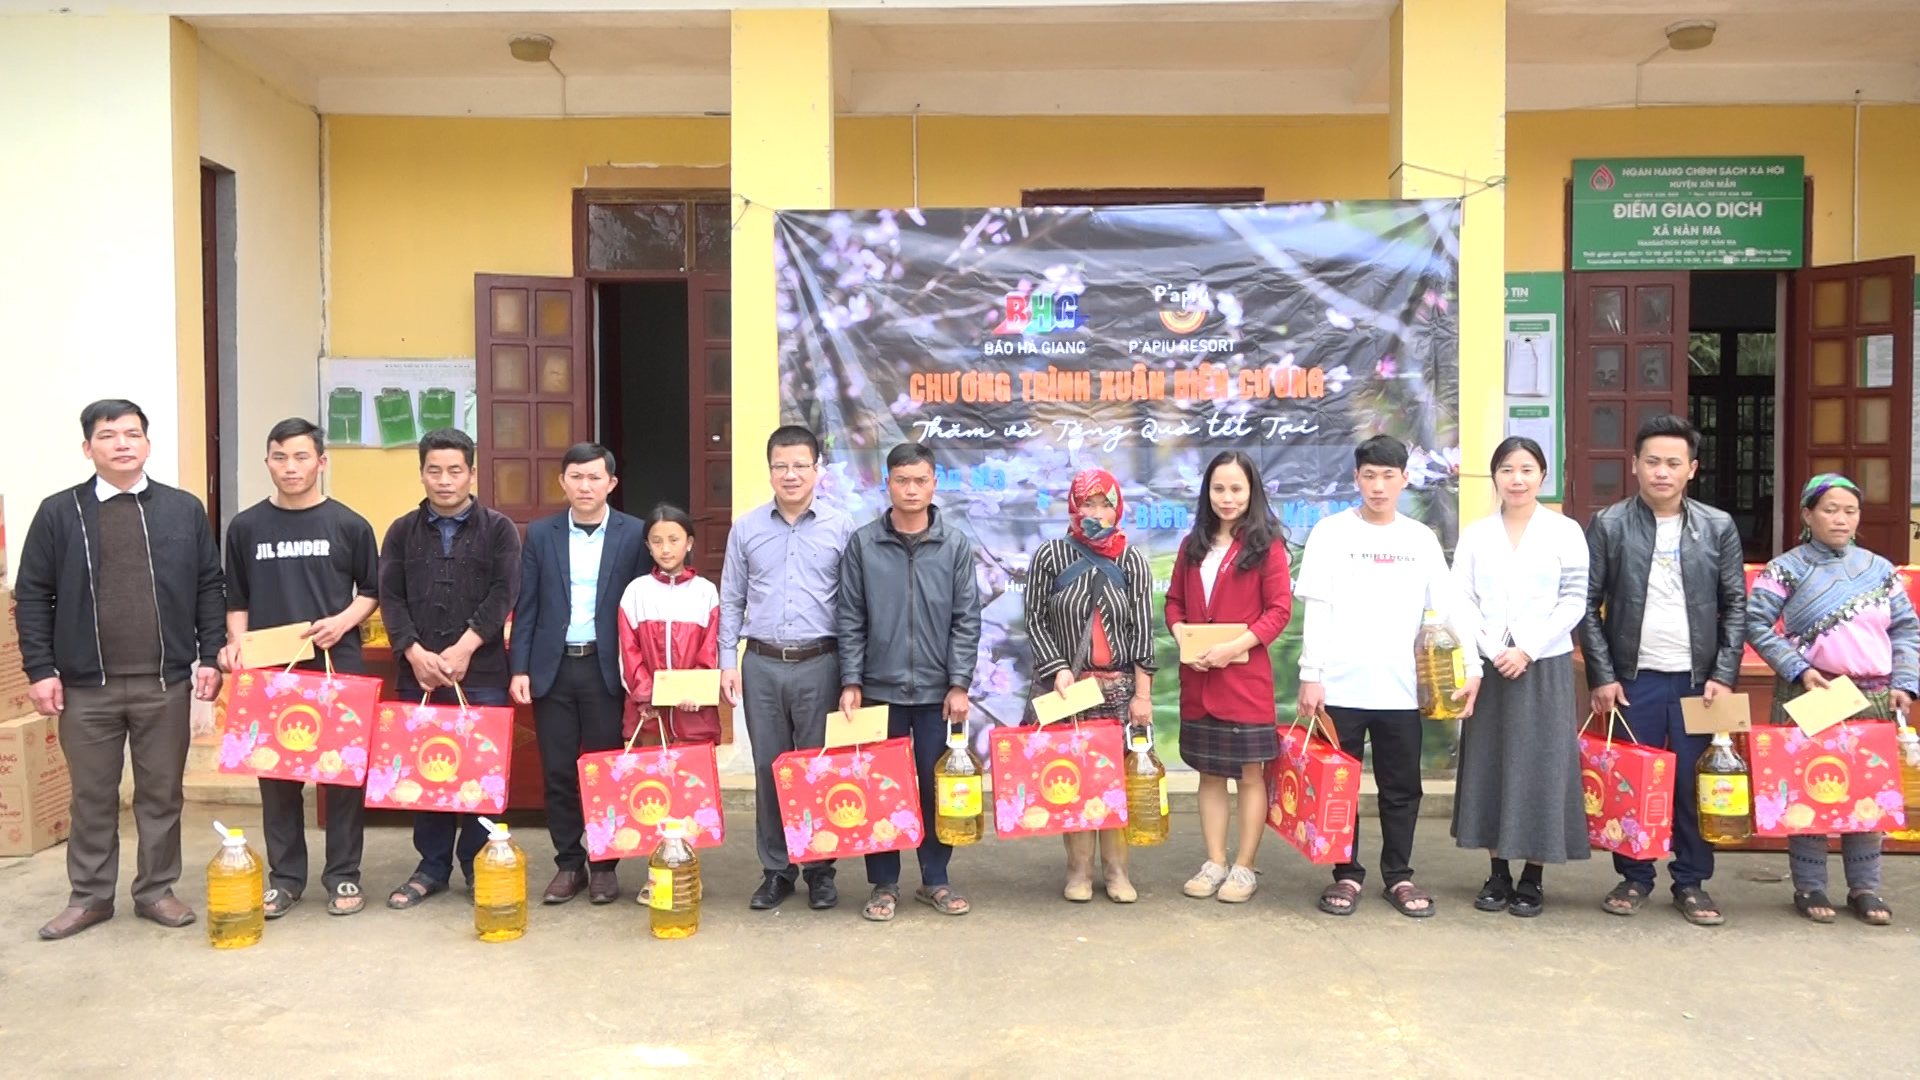 Báo Hà Giang phối hợp với Công ty cổ phần truyền thông Hoa Sao tặng quà Tết cho người nghèo ở xã Nàn Ma và Đồn Biên phòng Cửa khẩu Xín Mần